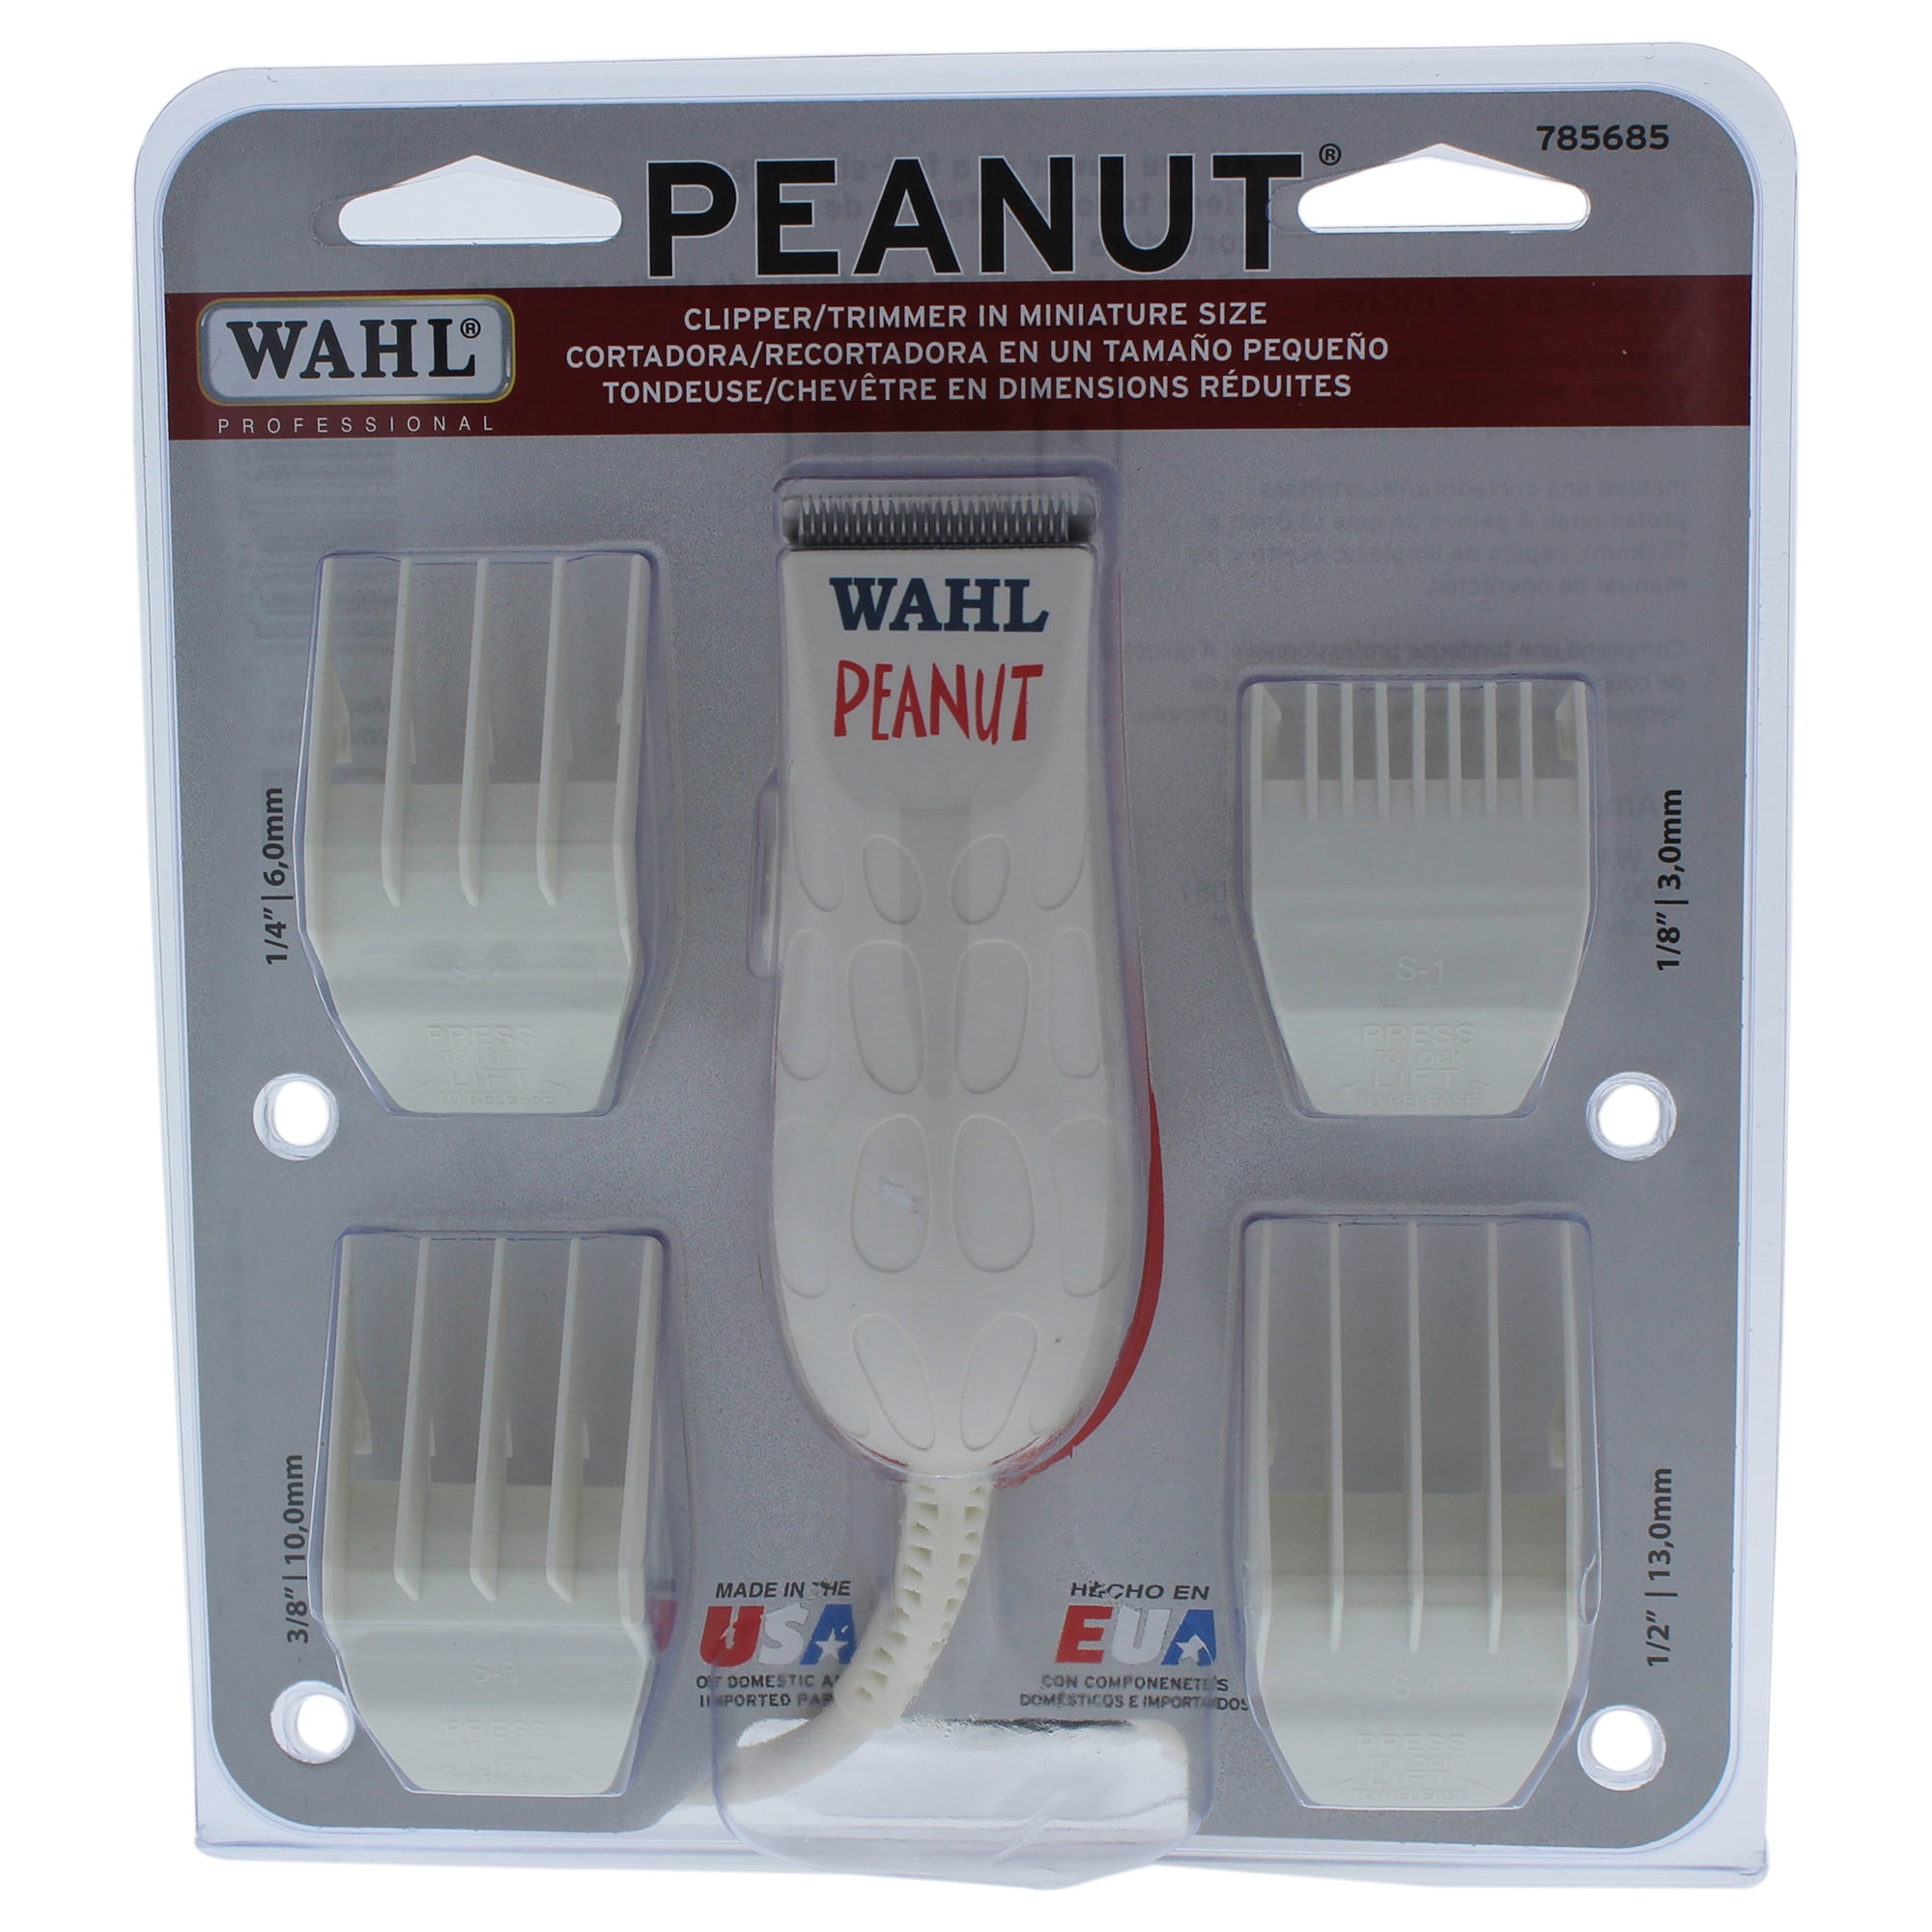 peanut razor walmart